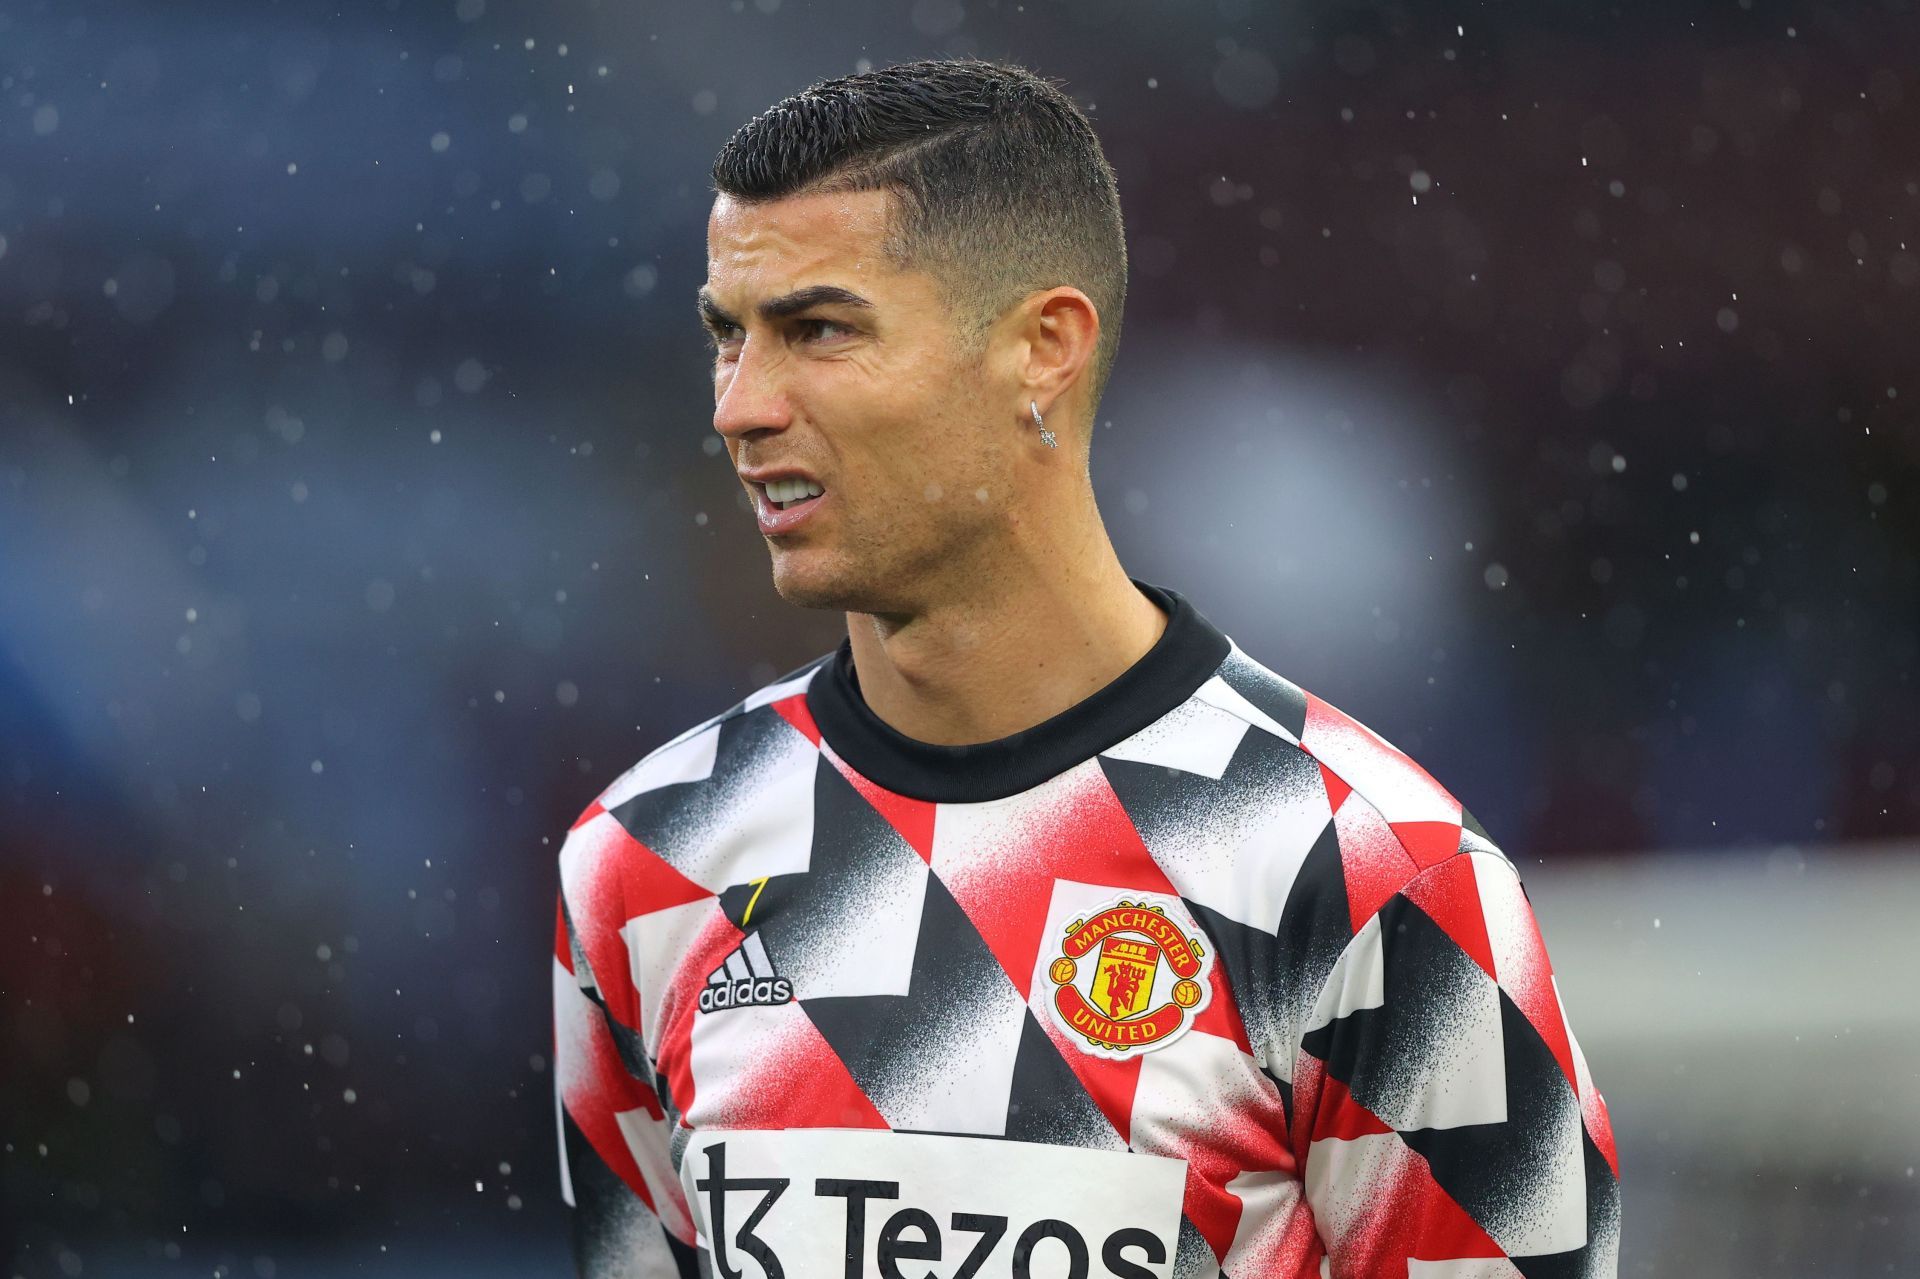 The Portuguese bids Old Trafford farewell